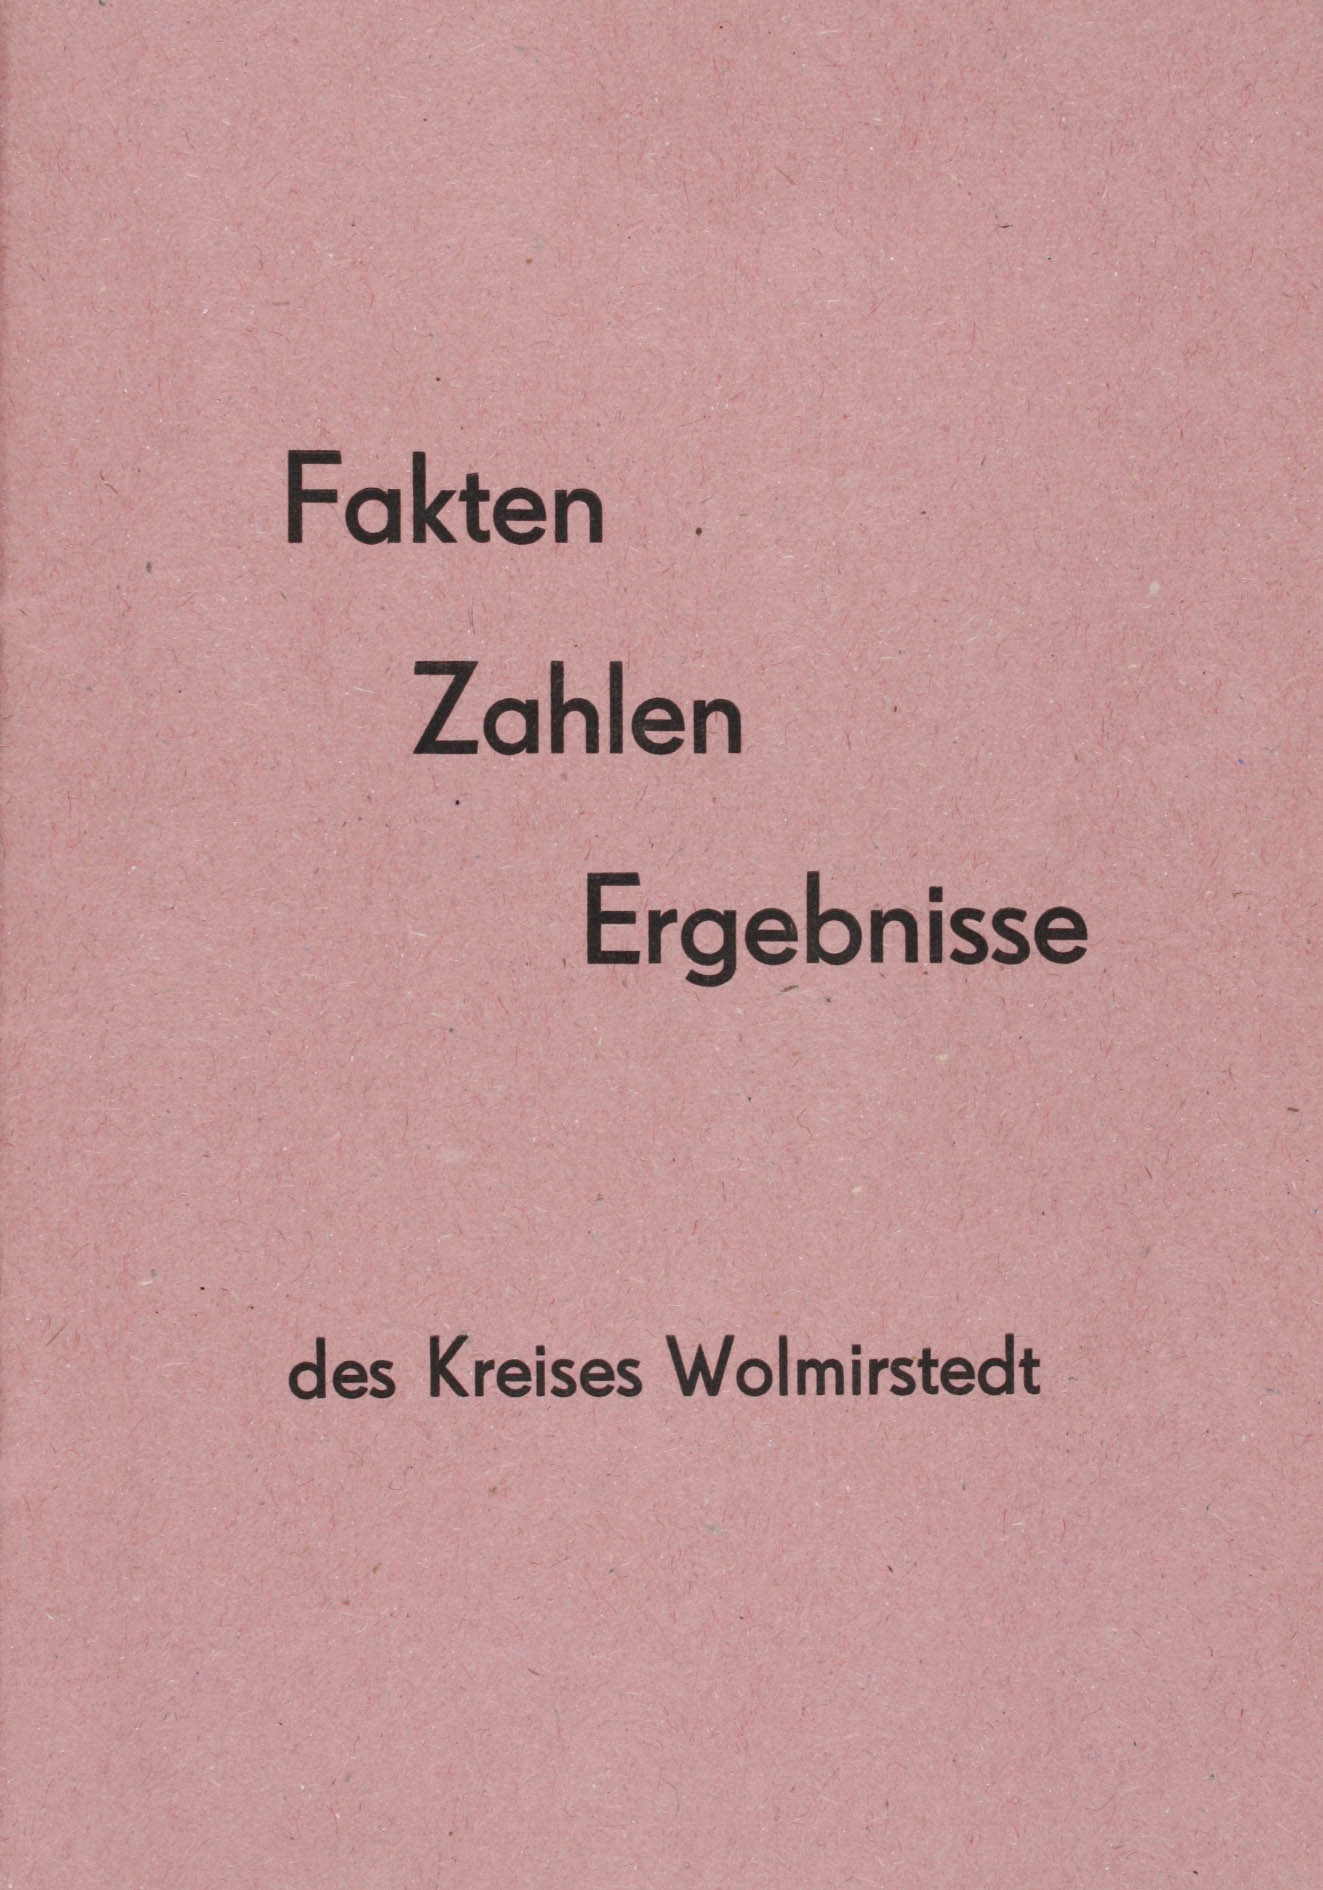 Broschüre des Kreises Wolmirstedt, Fakten, Zahlen, Ergebnisse (Museum Wolmirstedt RR-F)